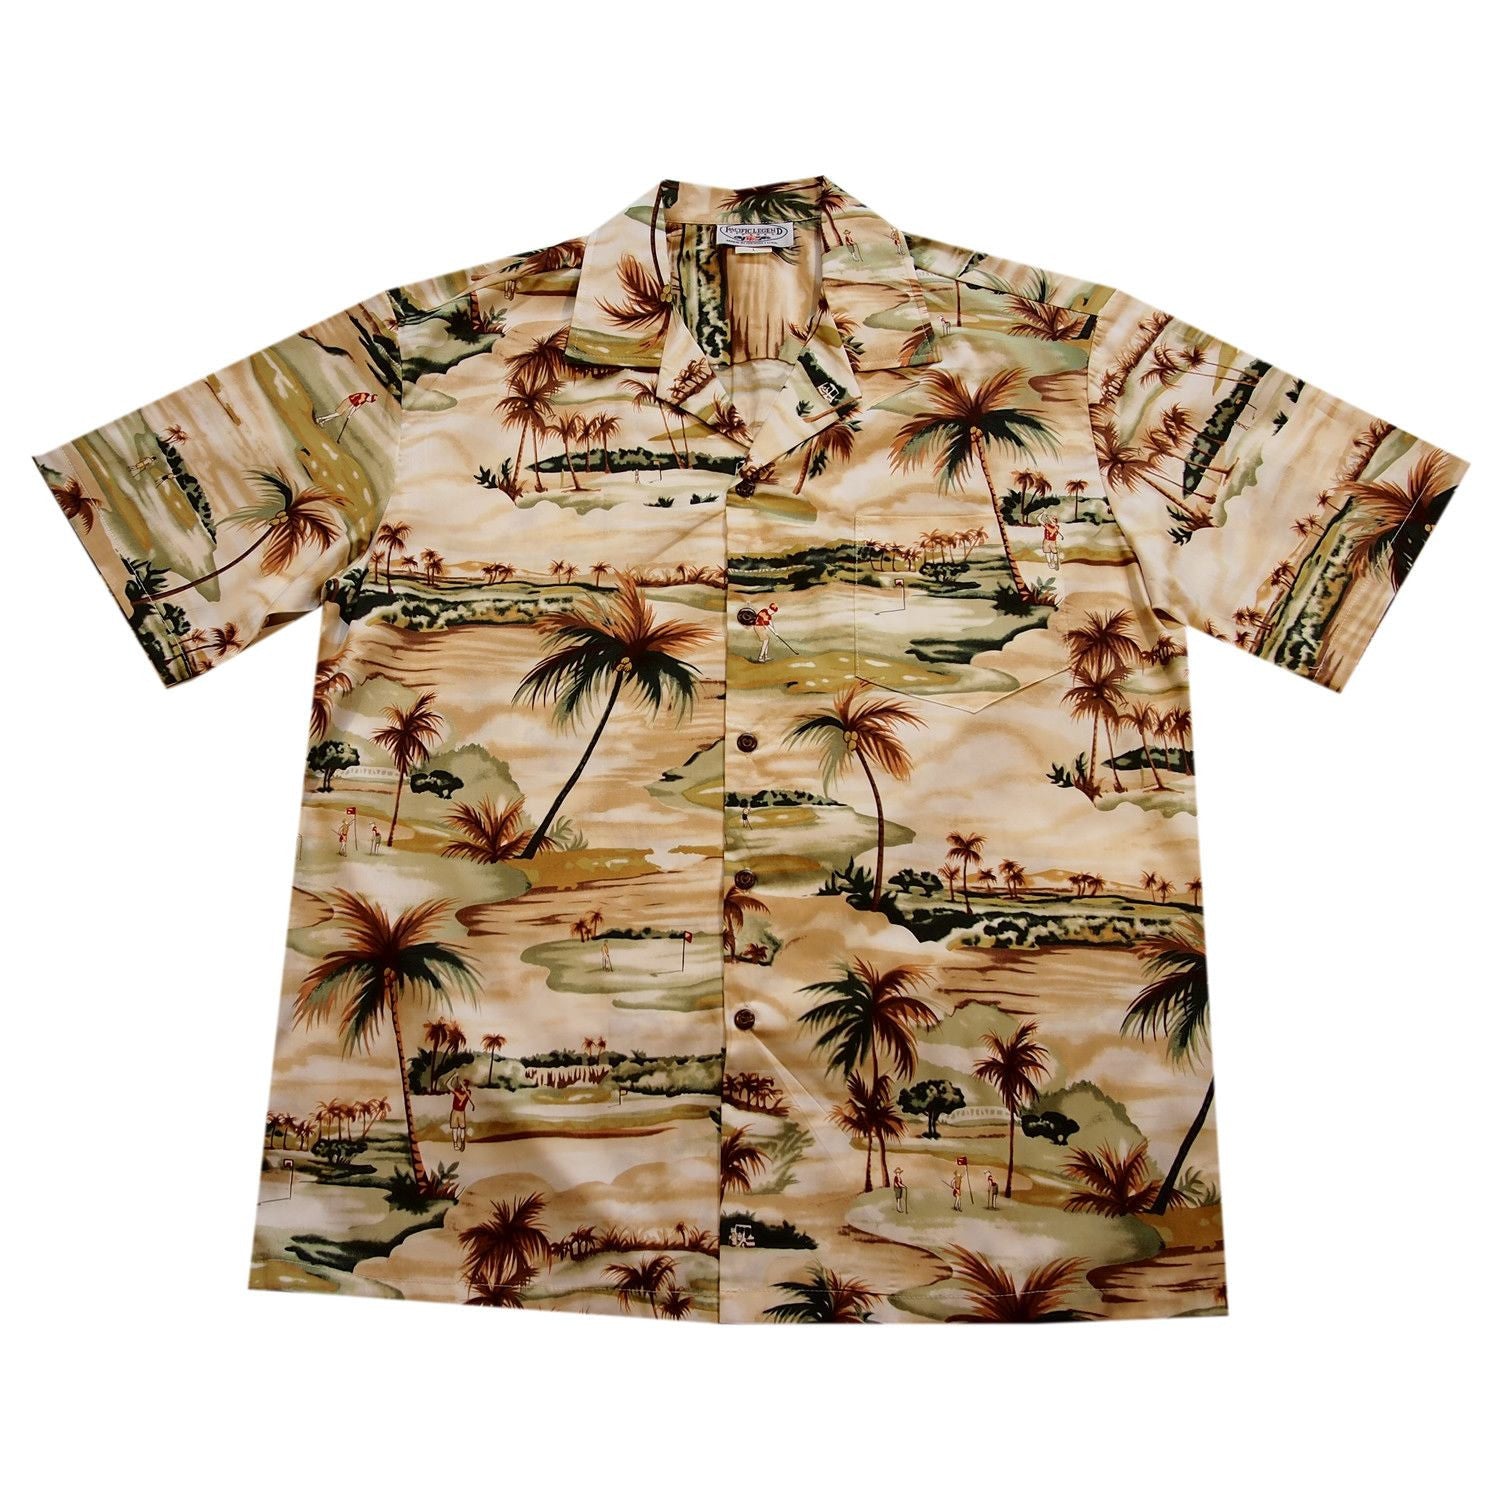 Tee Off Tan Golf Cotton Hawaiian Shirt - PapayaSun